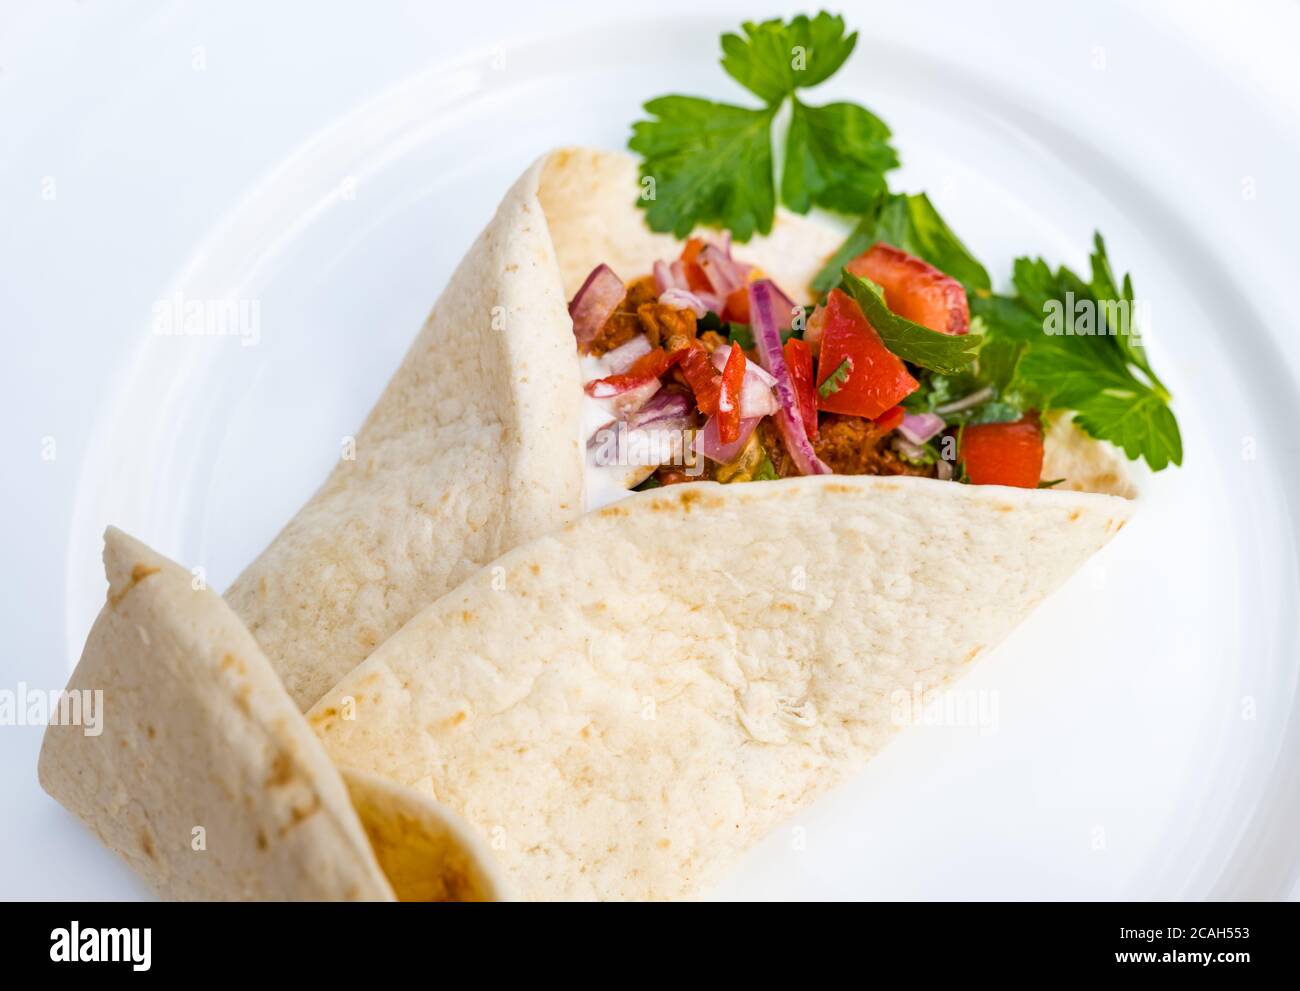 Primo piano di tortilla messicana ripiena di maiale tirato, salsa di pomodoro e panna acida con coriandolo su piatto da cena bianco Foto Stock